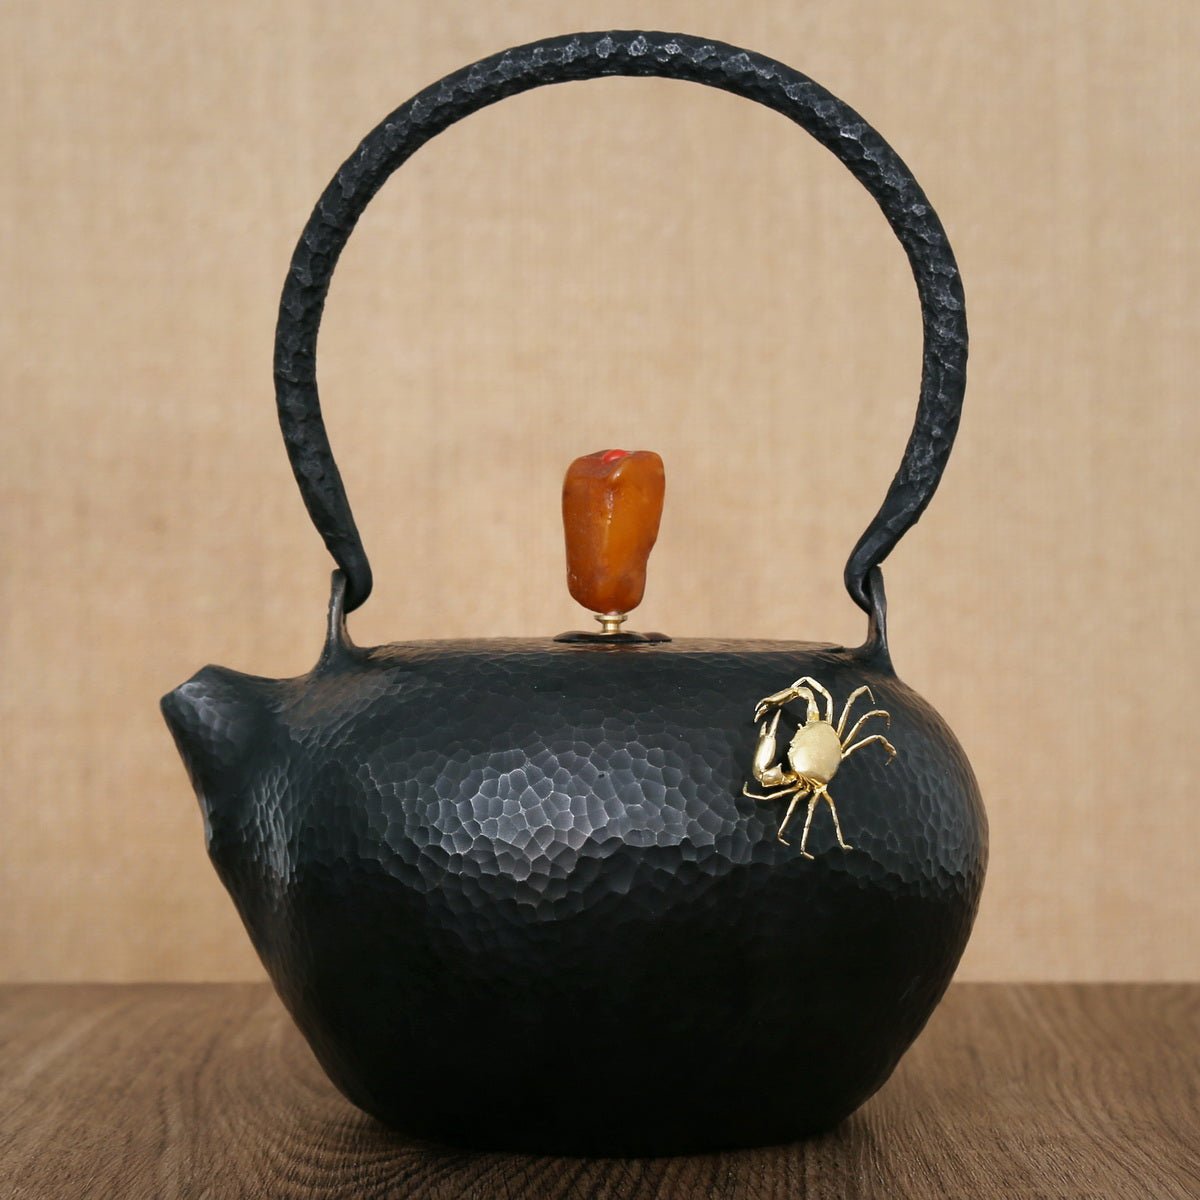 Accessories for Iron Kettle: Crab (Copper) - Taishan Tea Club